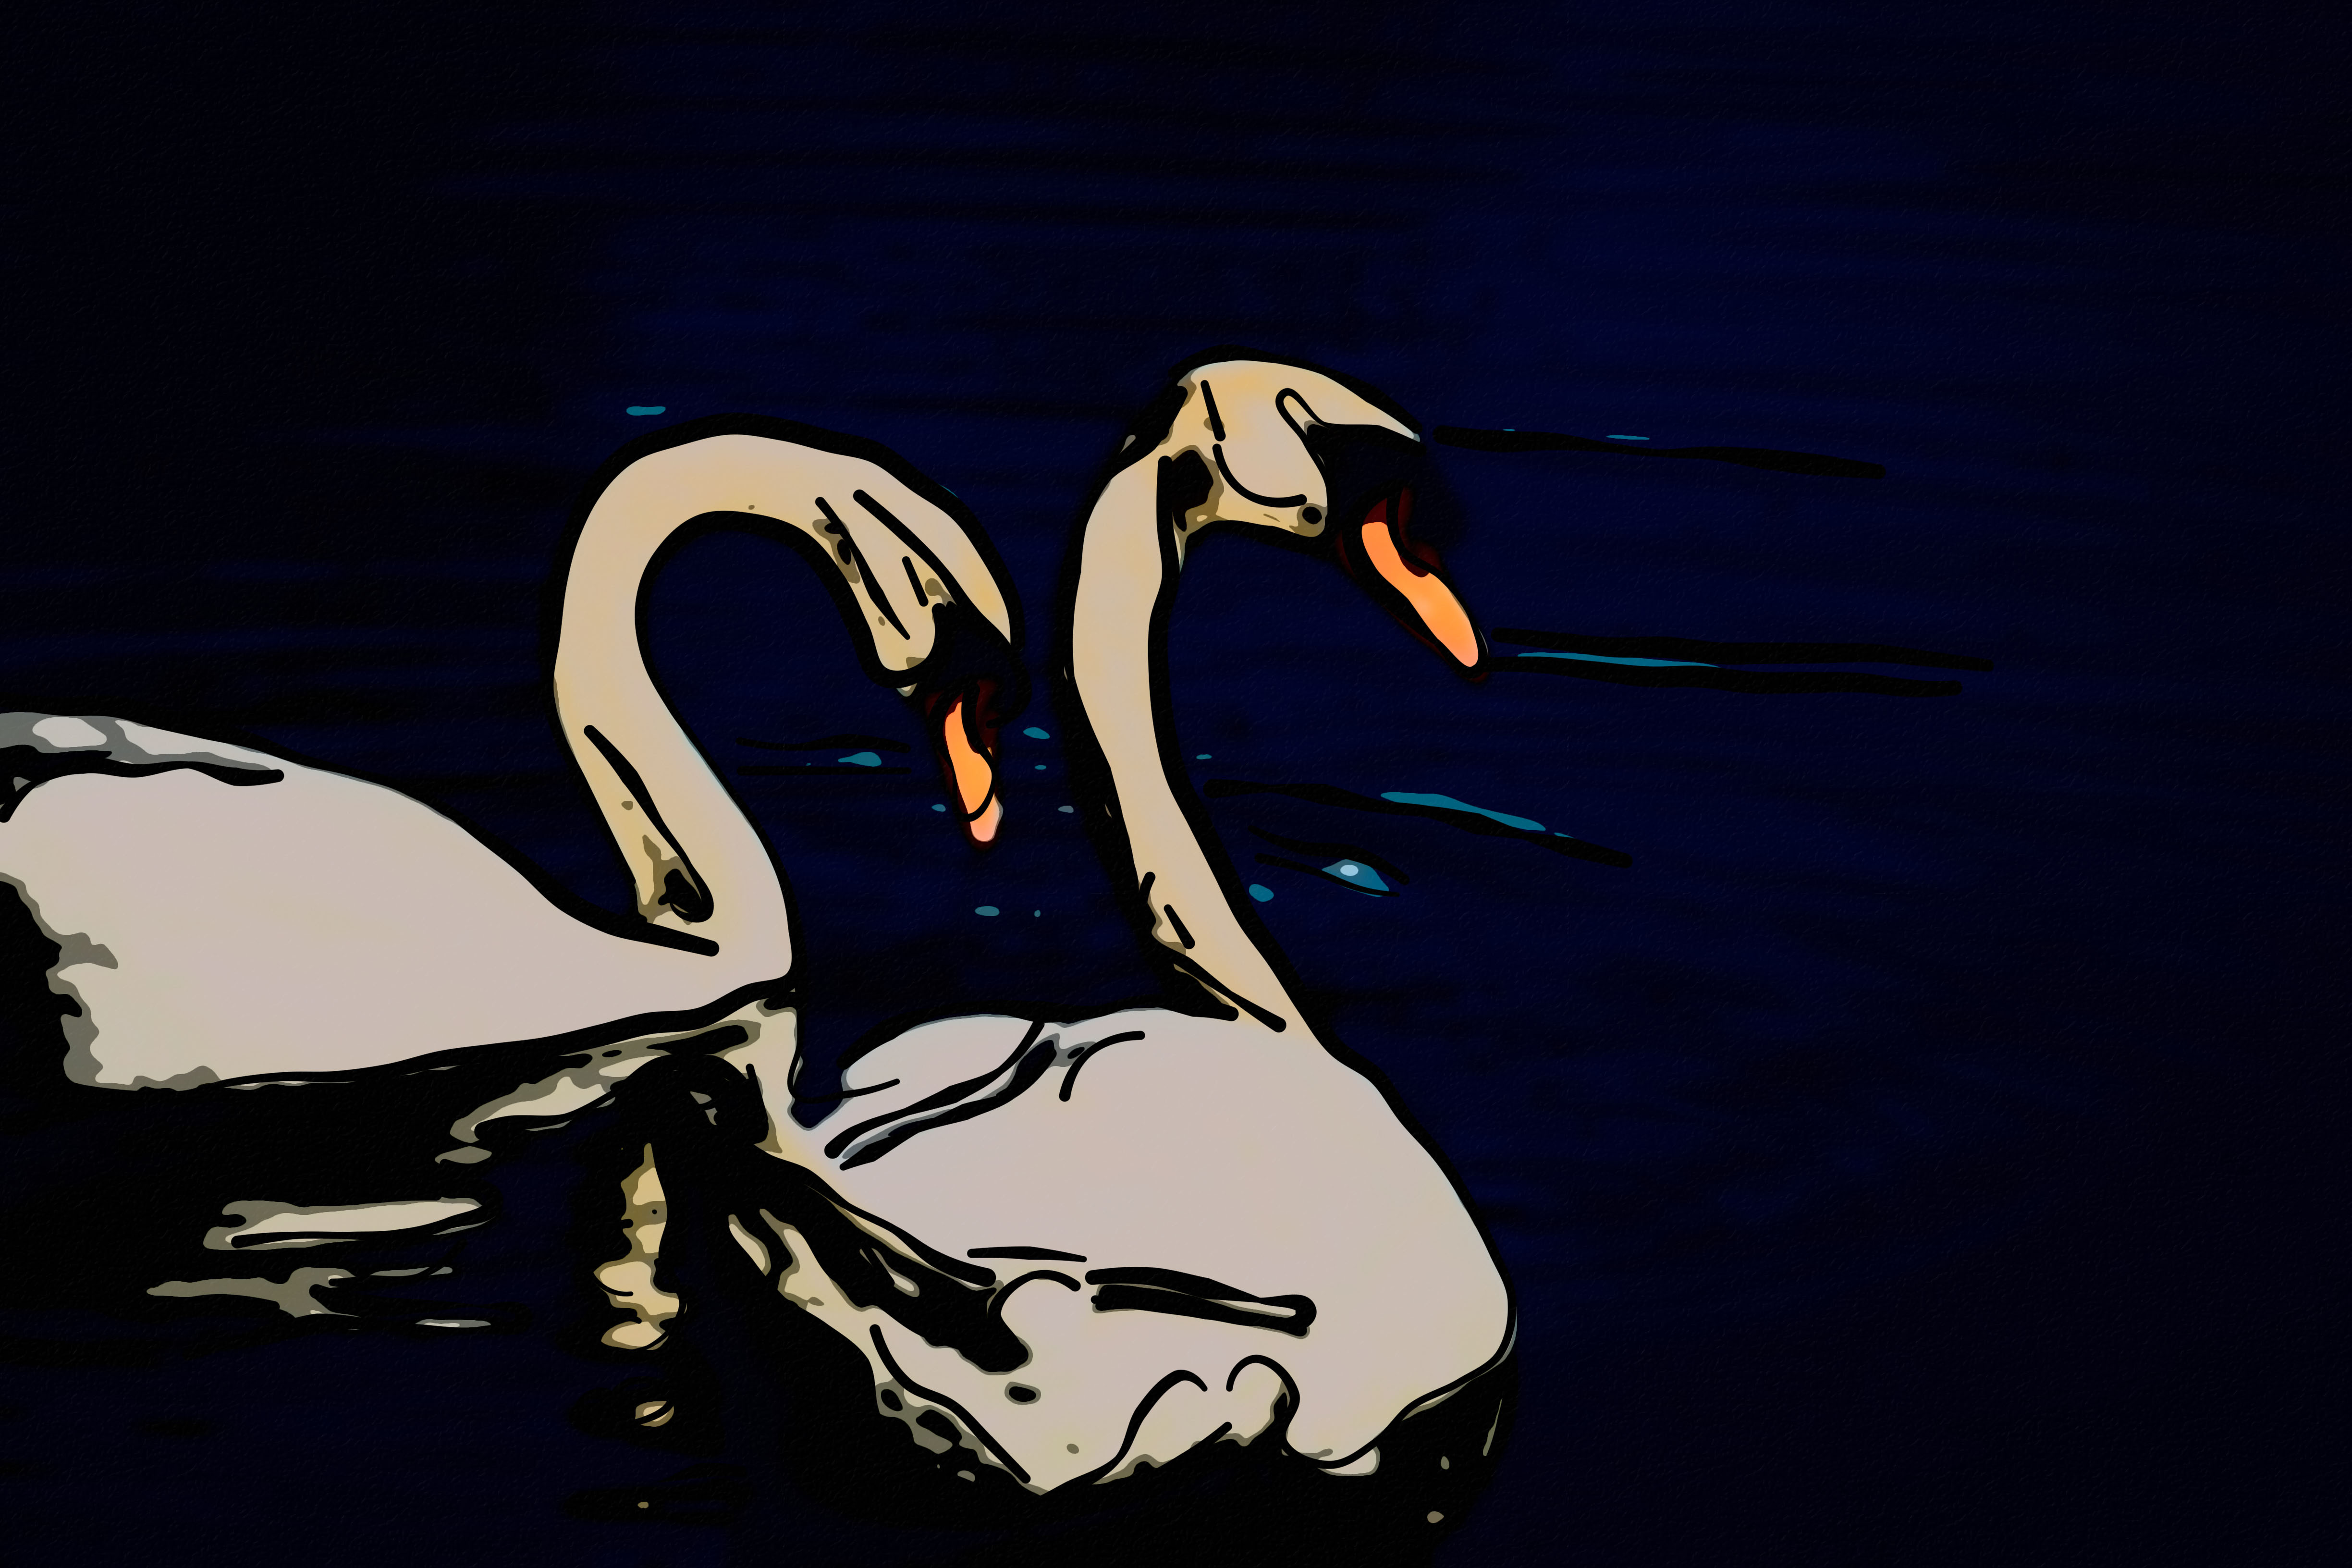 Swan Art by Susanlu4esm